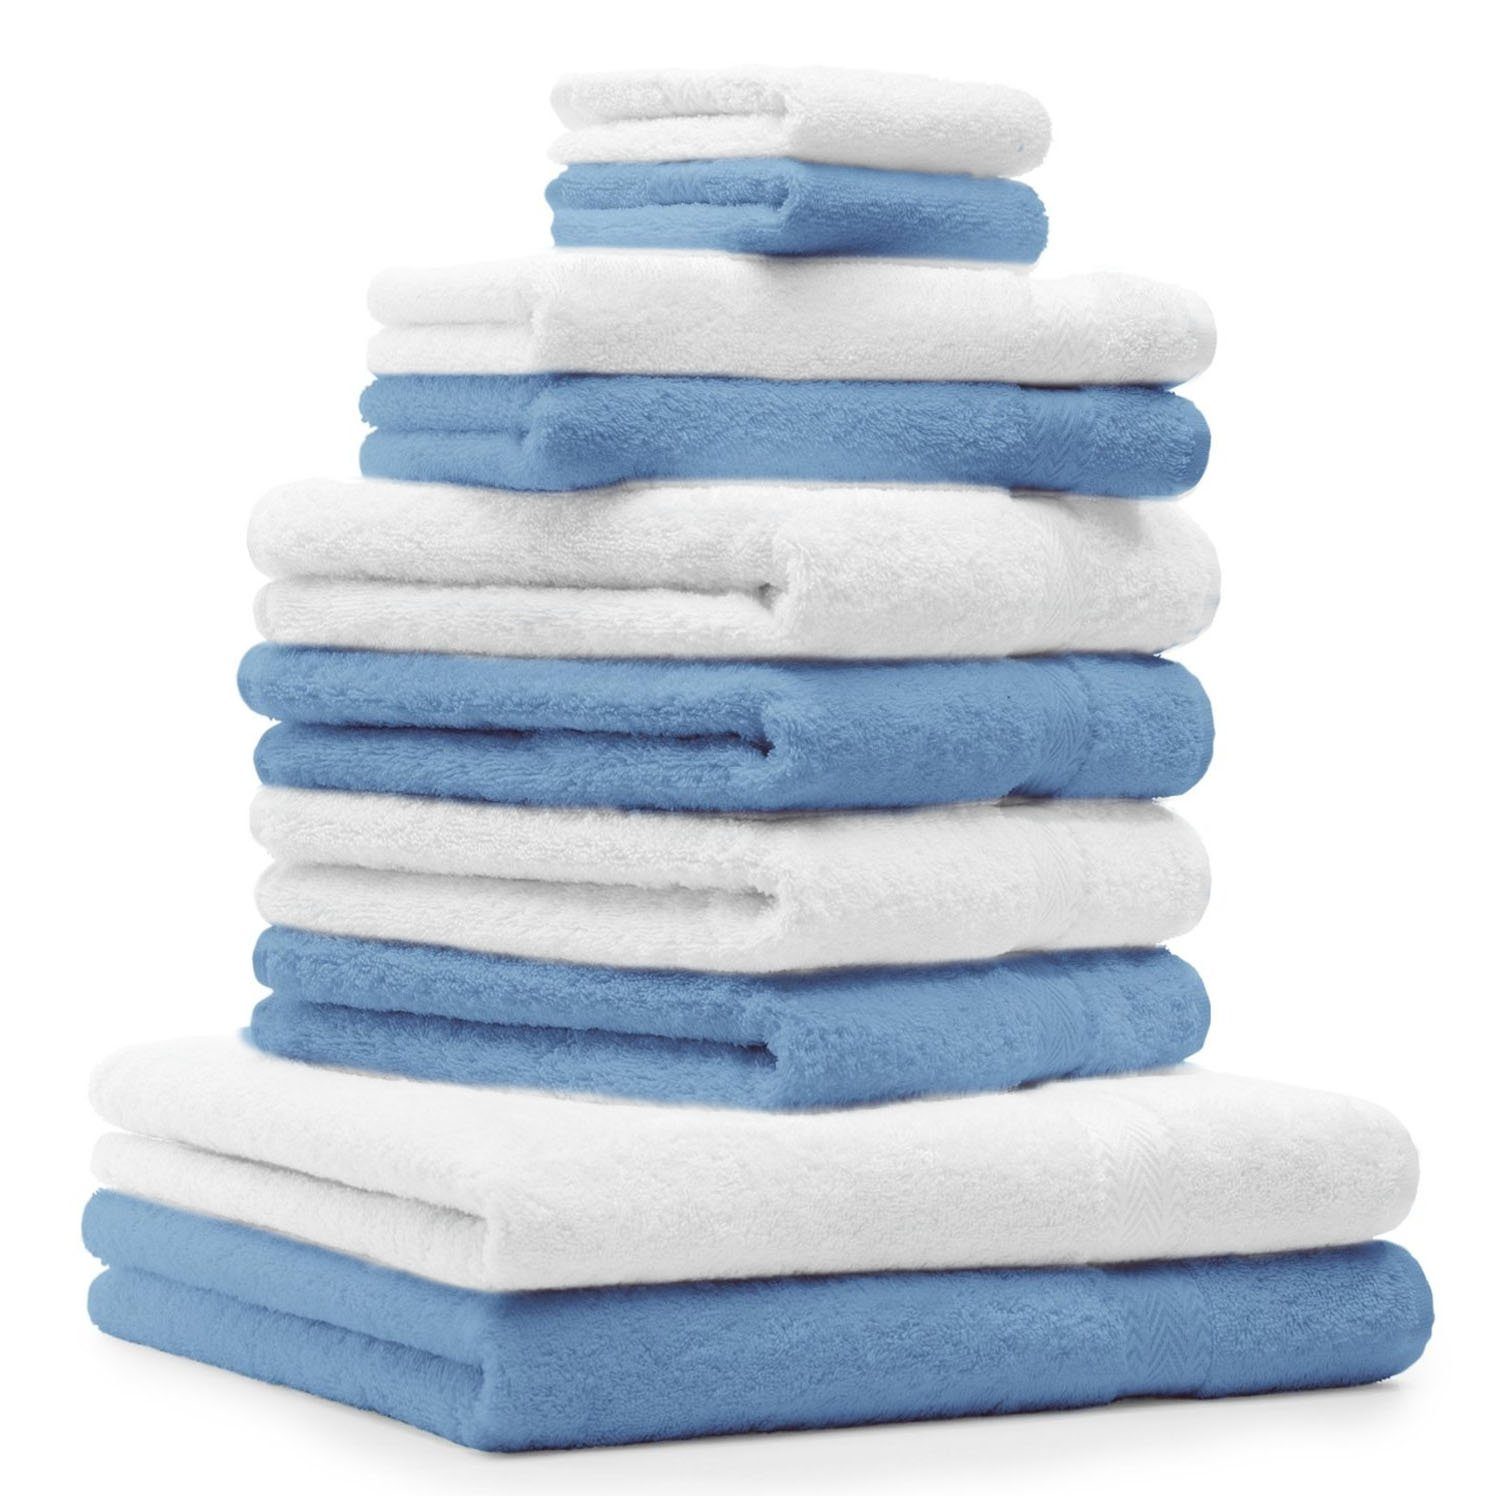 Betz Handtuch Set 10-TLG. Handtuch-Set Classic Farbe hellblau und weiß, 100% Baumwolle